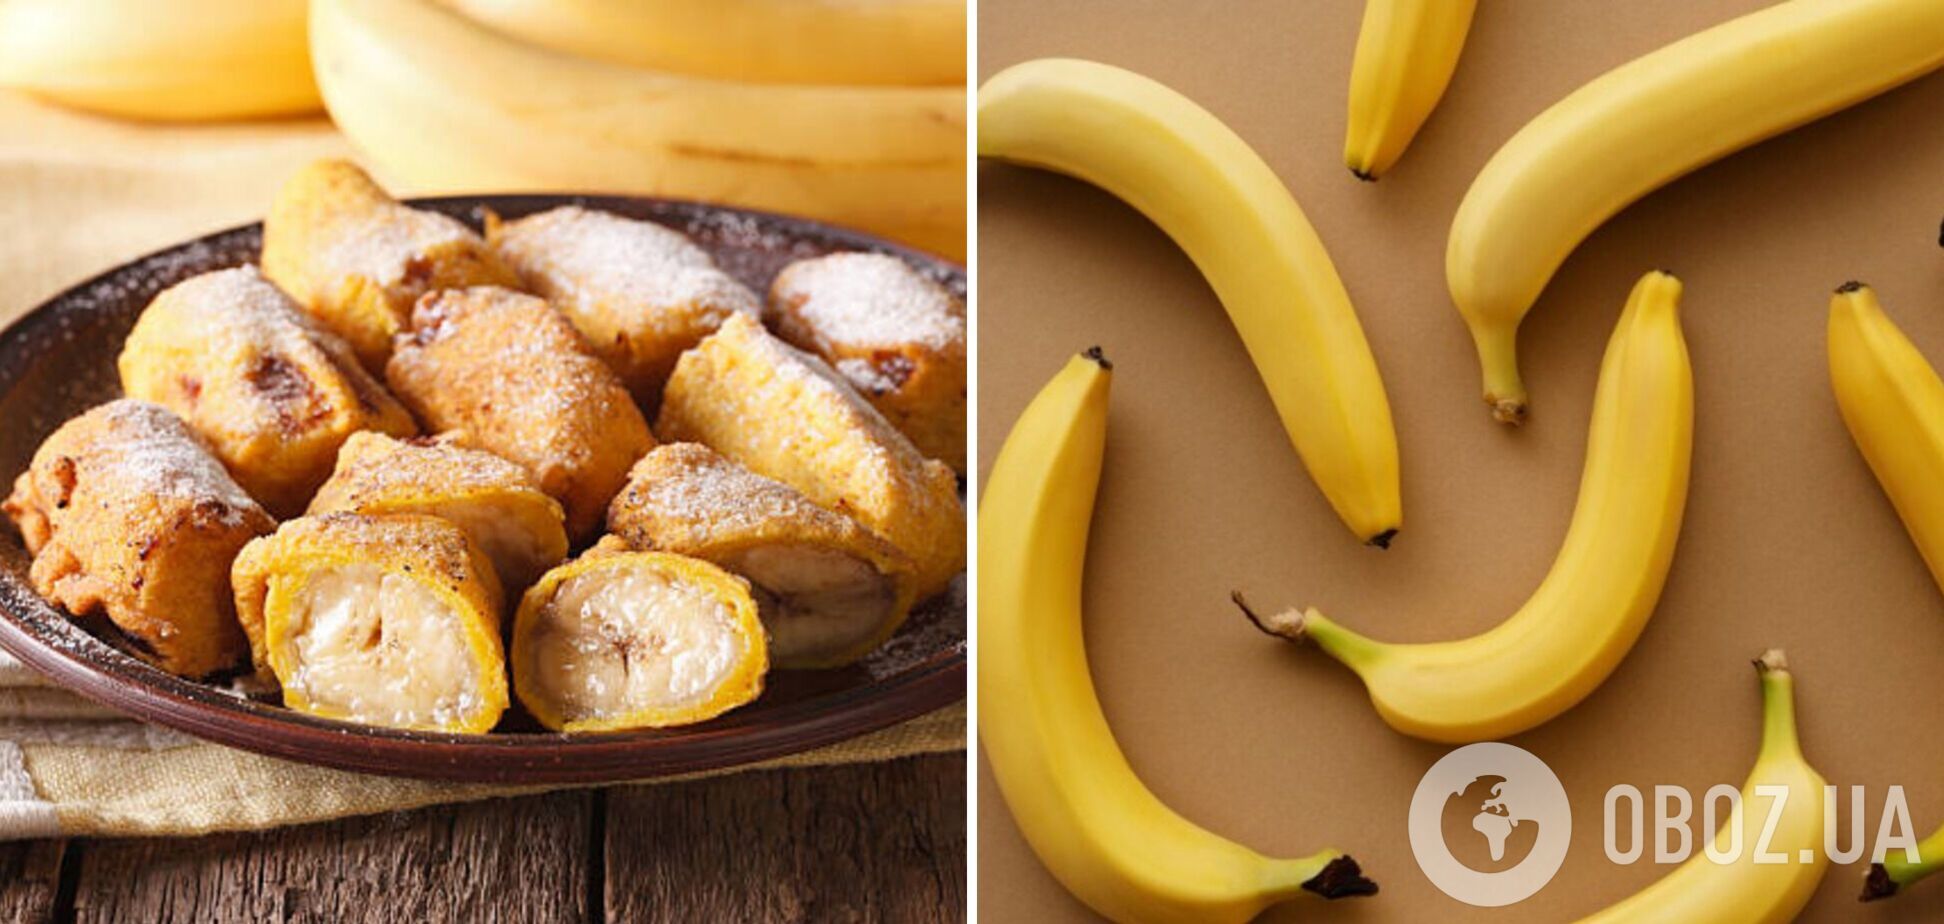 Банан в кляре за 5 минут: низкокалорийный десерт, который можно даже детям